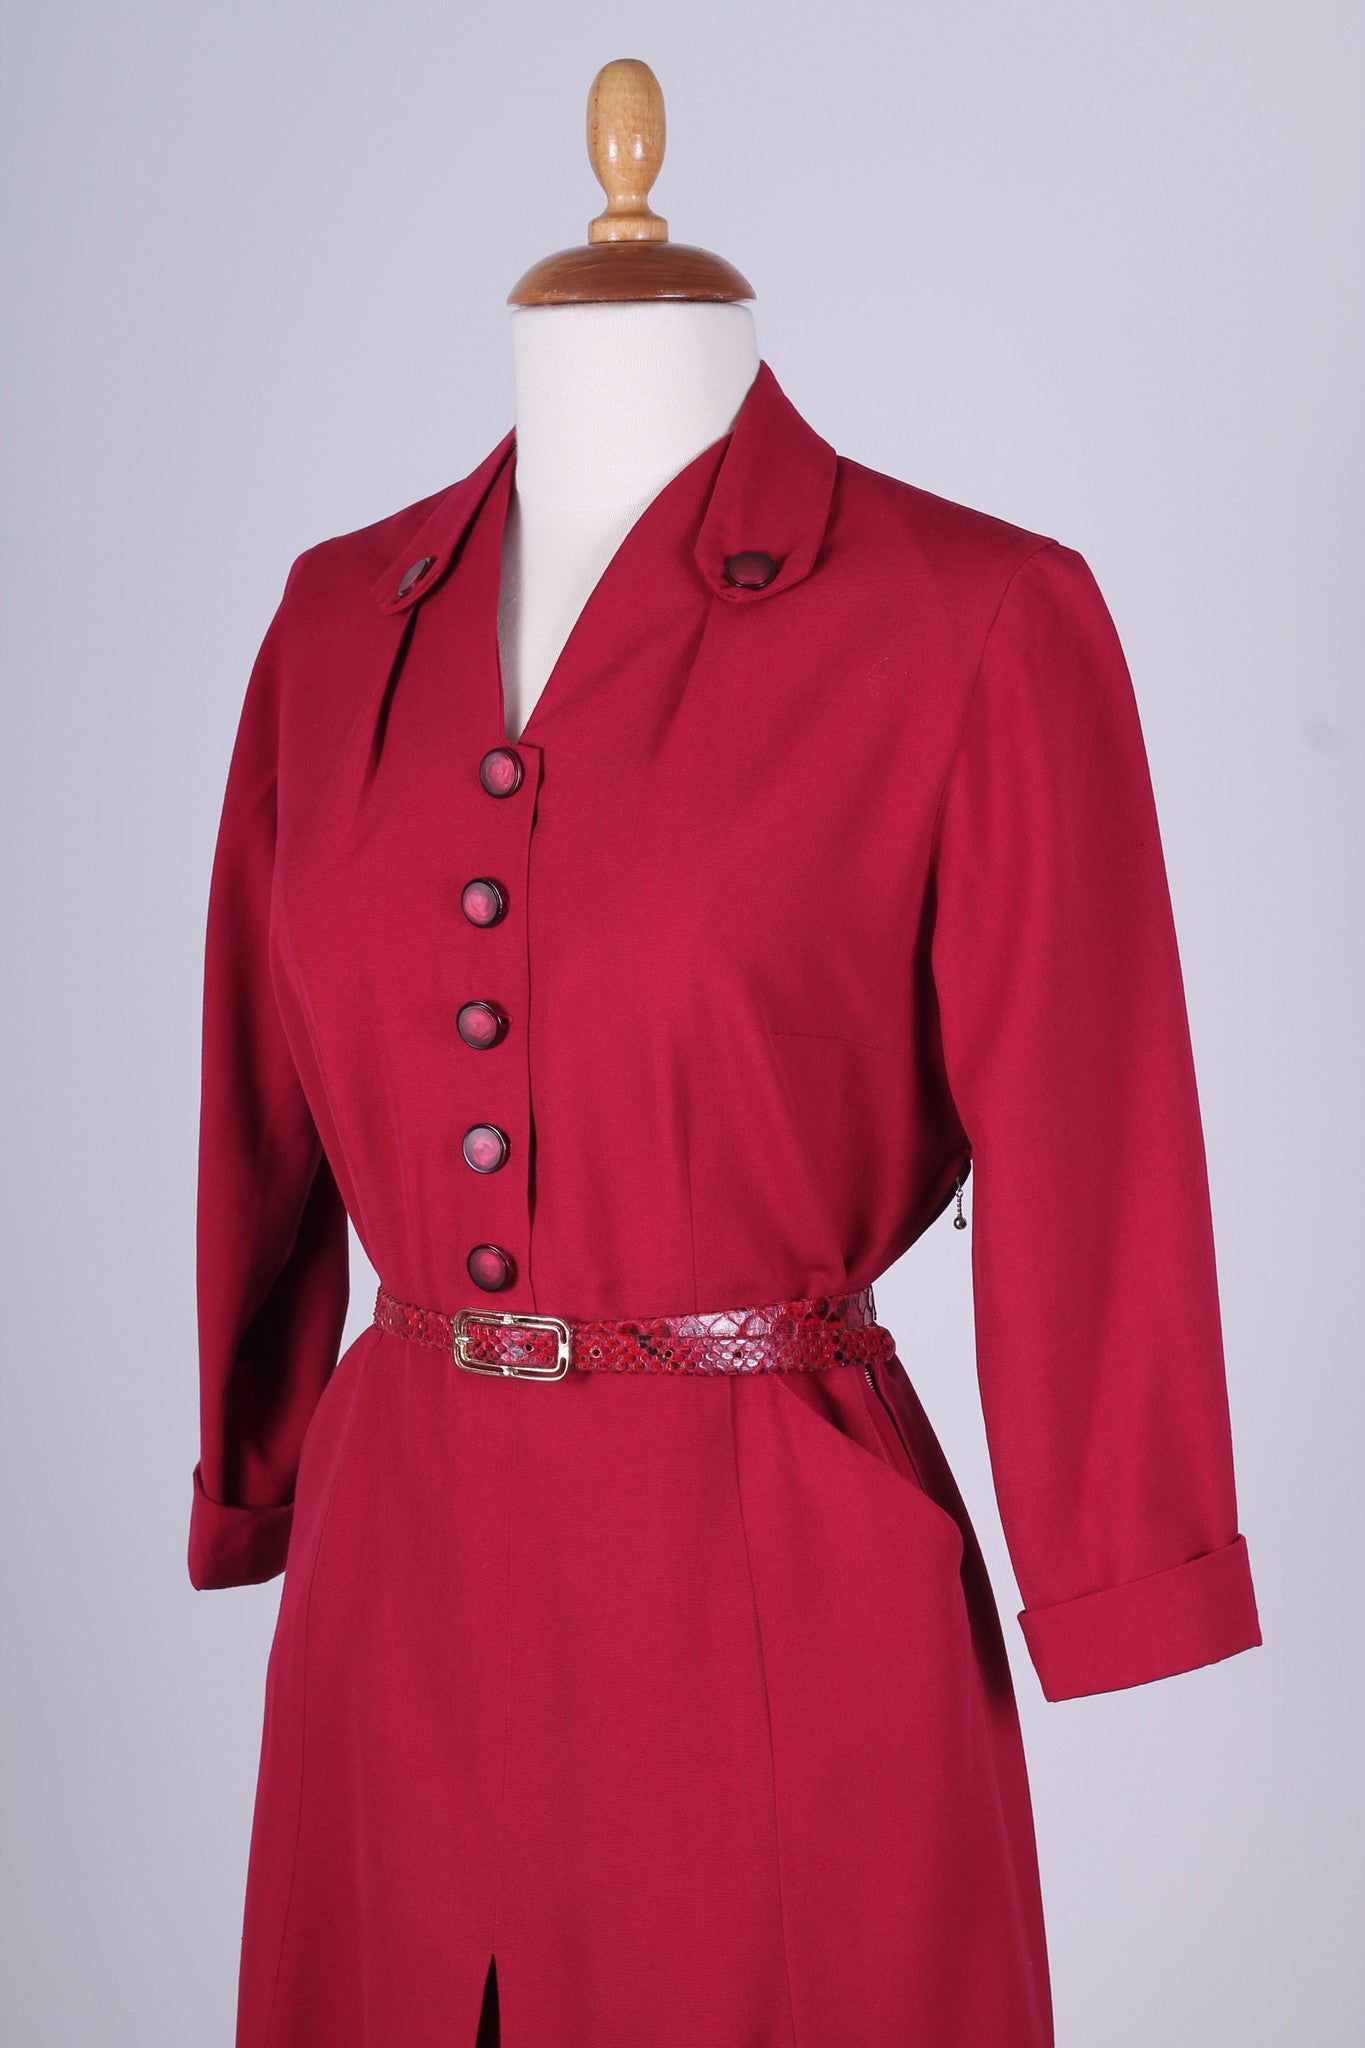 Solgt vintage tøj - Rød hverdagskjole 1940. M - Solgt - Vintage Divine - 4